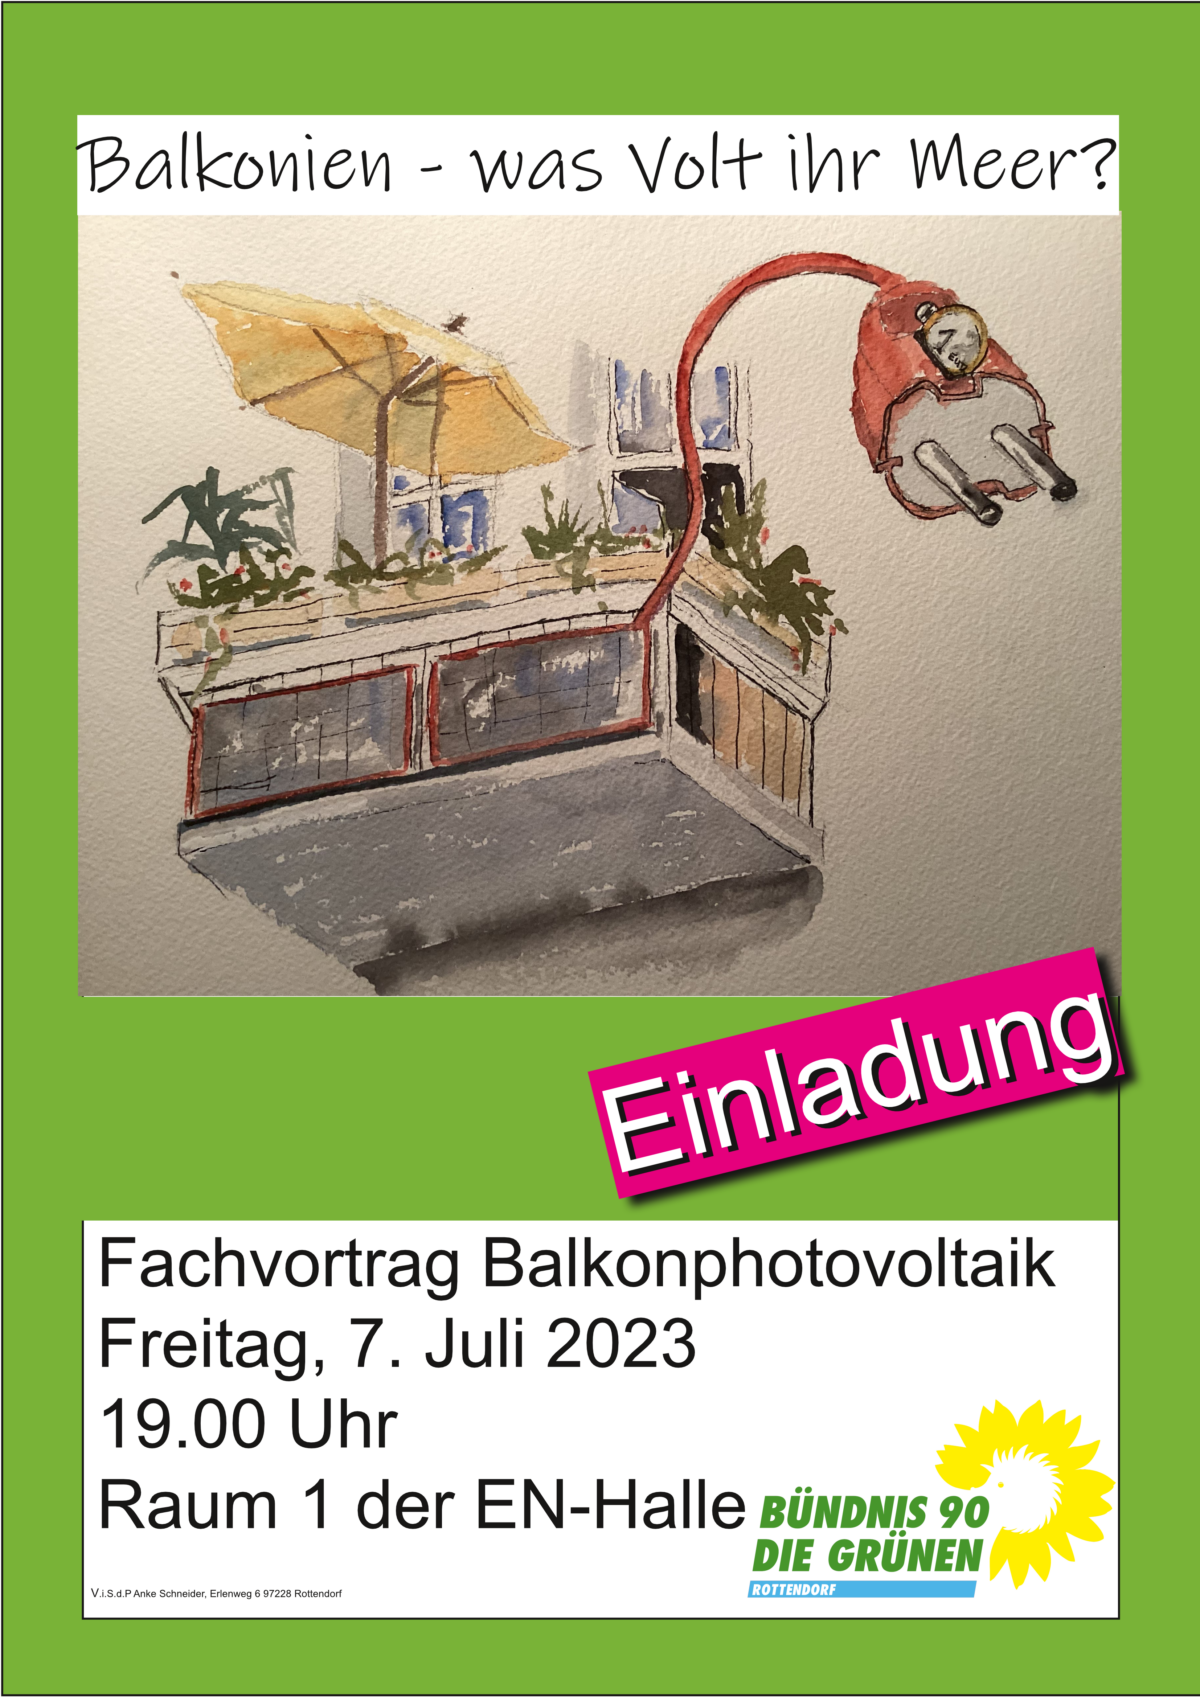 Plakat für den Fachvortrag "Balkonphotovoltaik". Die Veranstaltung findet am Freitag, den 7. Juli.2023 um 19:00 Uhr in Raum 1 der EN-Halle statt. 